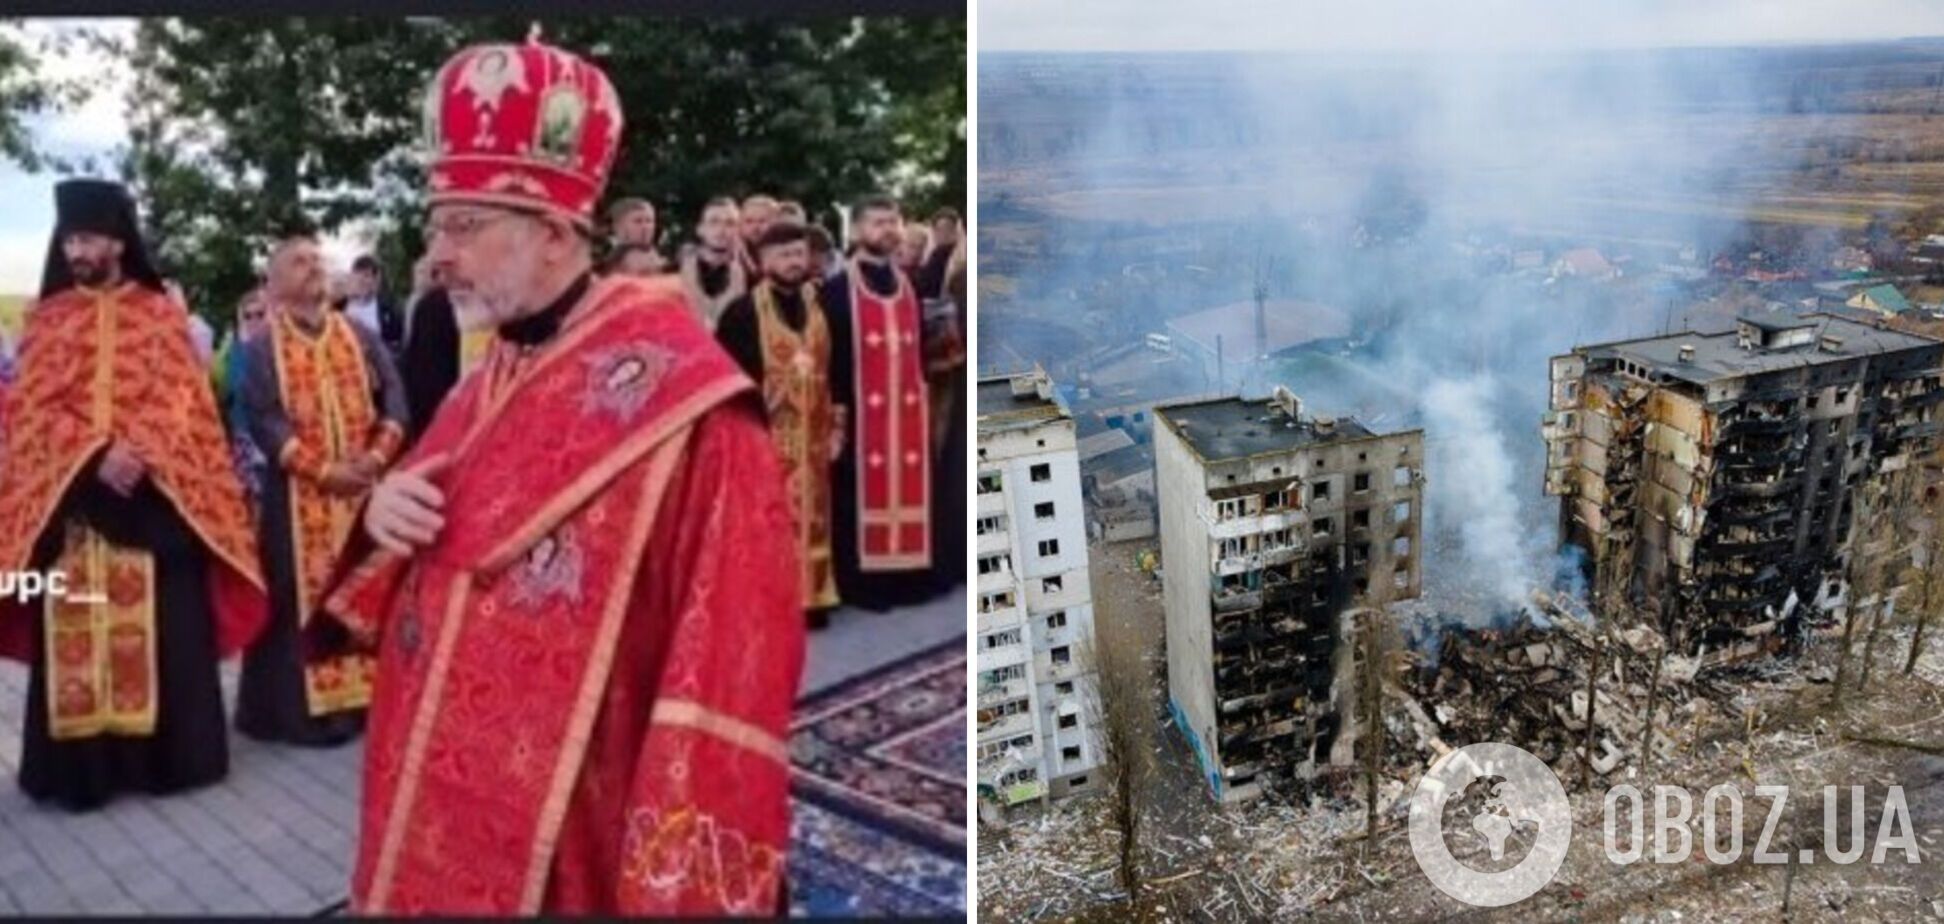 Митрополит ПЦУ заявил, что украинские власти 'выдумывают' войну: в церкви отреагировали. Видео